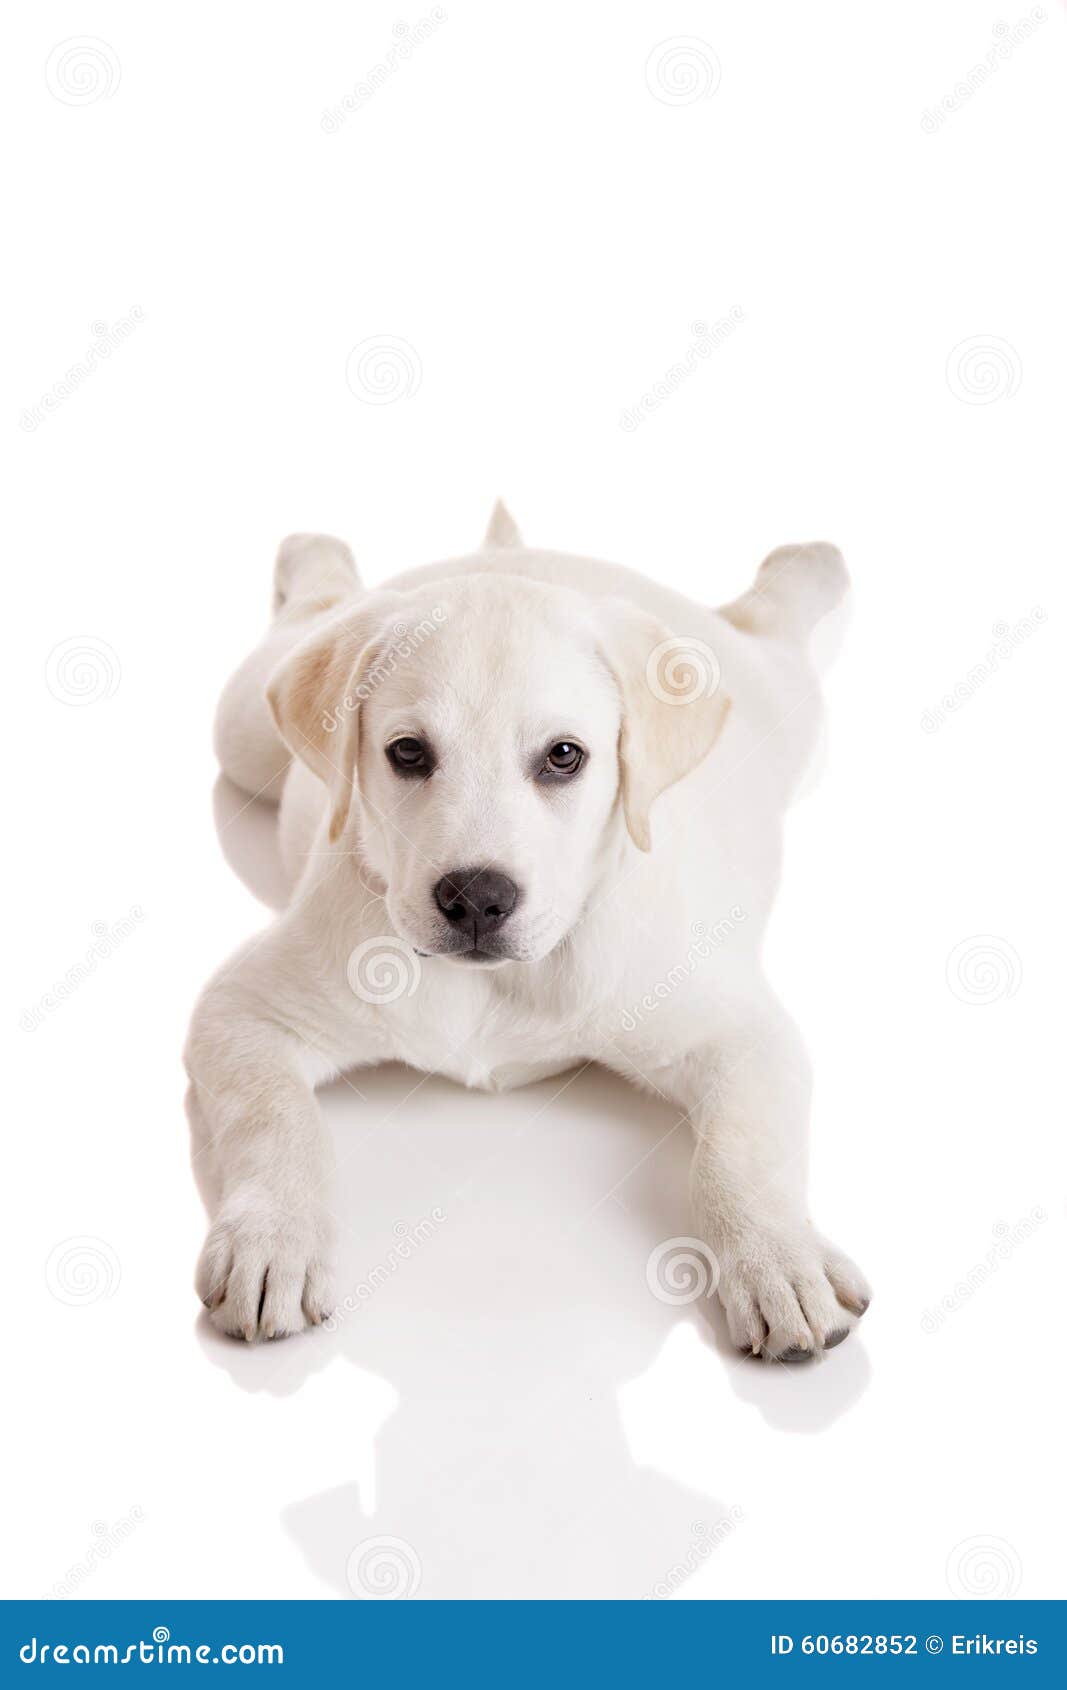 Proponer vesícula biliar fusión Bebé de Labrador foto de archivo. Imagen de perro, pata - 60682852